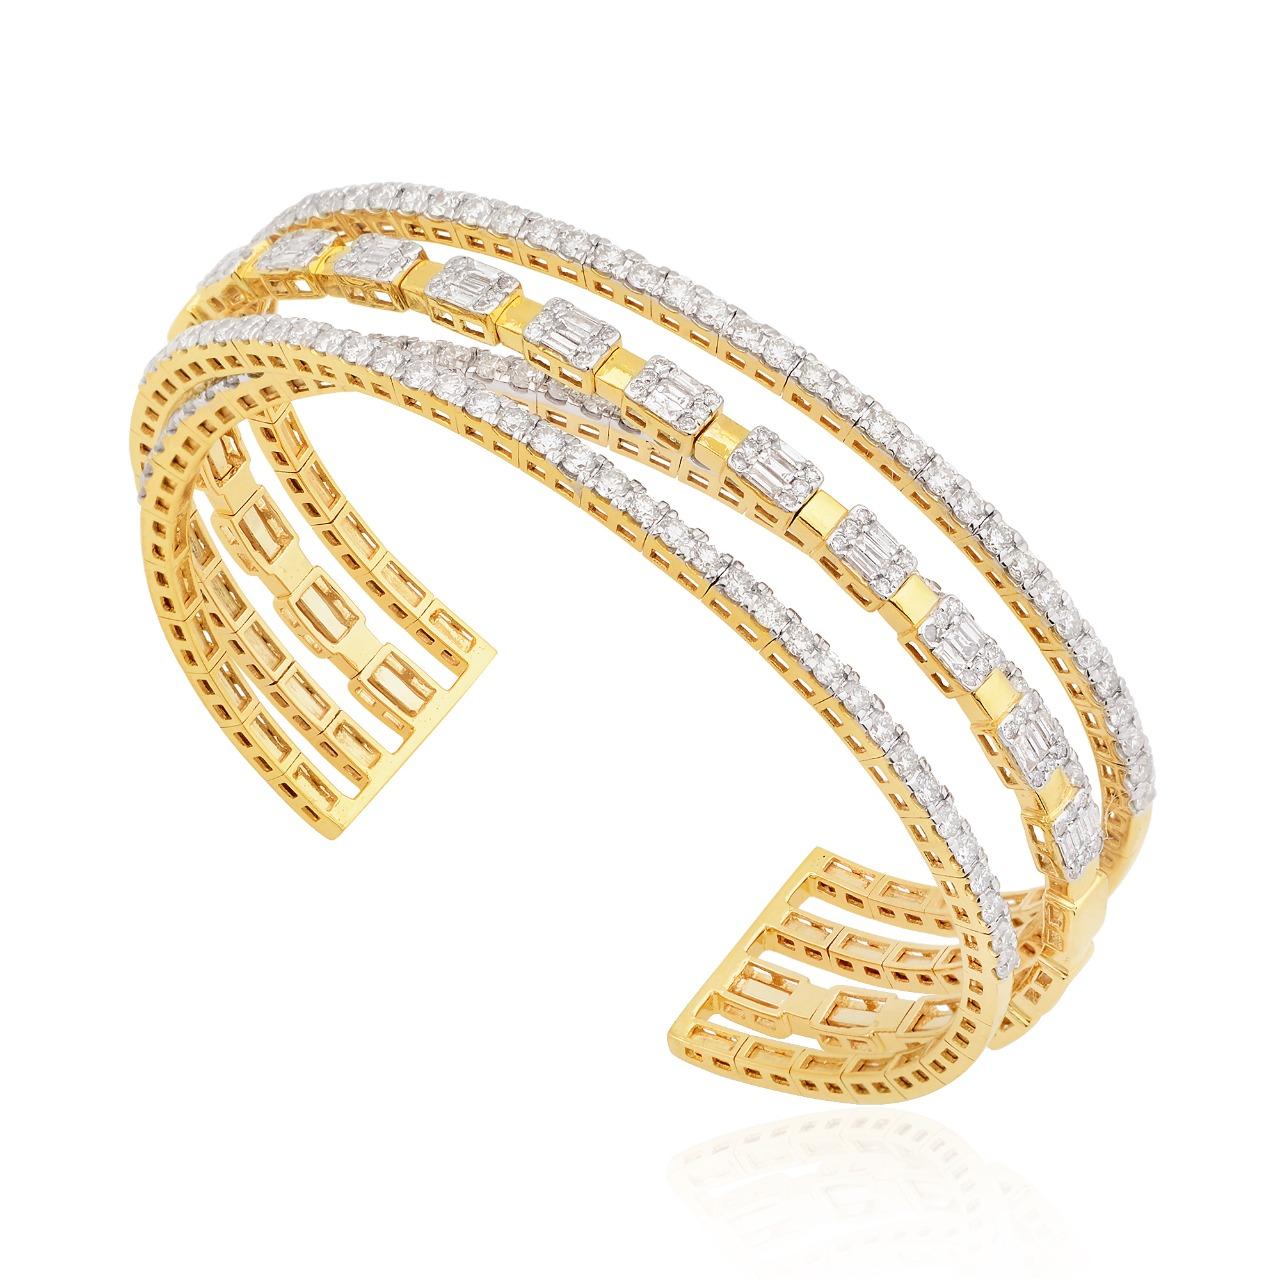 Fabriqué en or jaune 14 carats, ce bracelet à maillons est serti à la main de 5,30 carats de diamants étincelants. Disponible en or jaune, rose et blanc. 

SUIVEZ la vitrine de MEGHNA JEWELS pour découvrir la dernière collection et les pièces